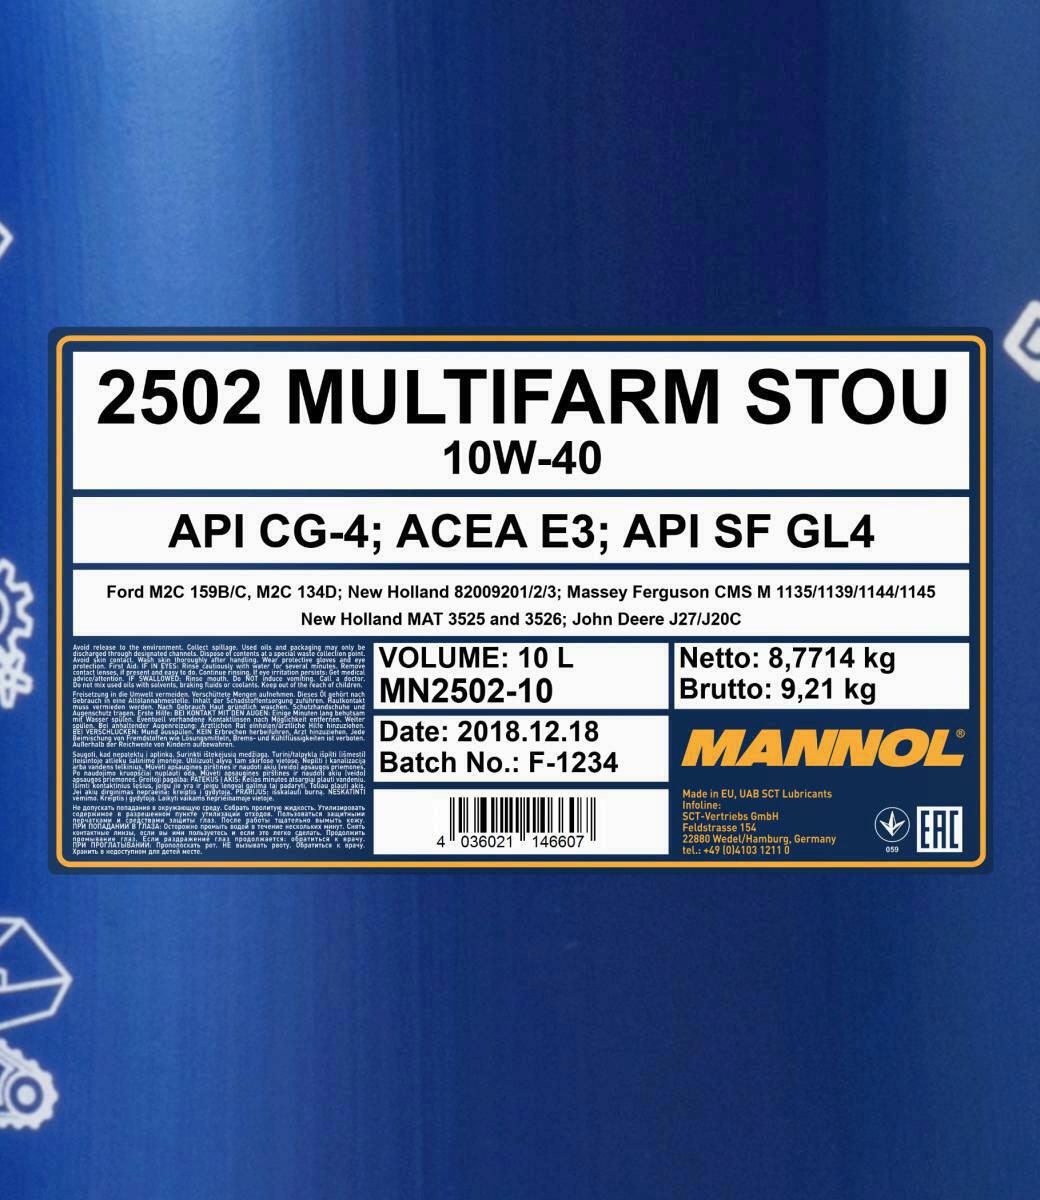 10L Mannol Motoröl Multifarm STOU 10W-40